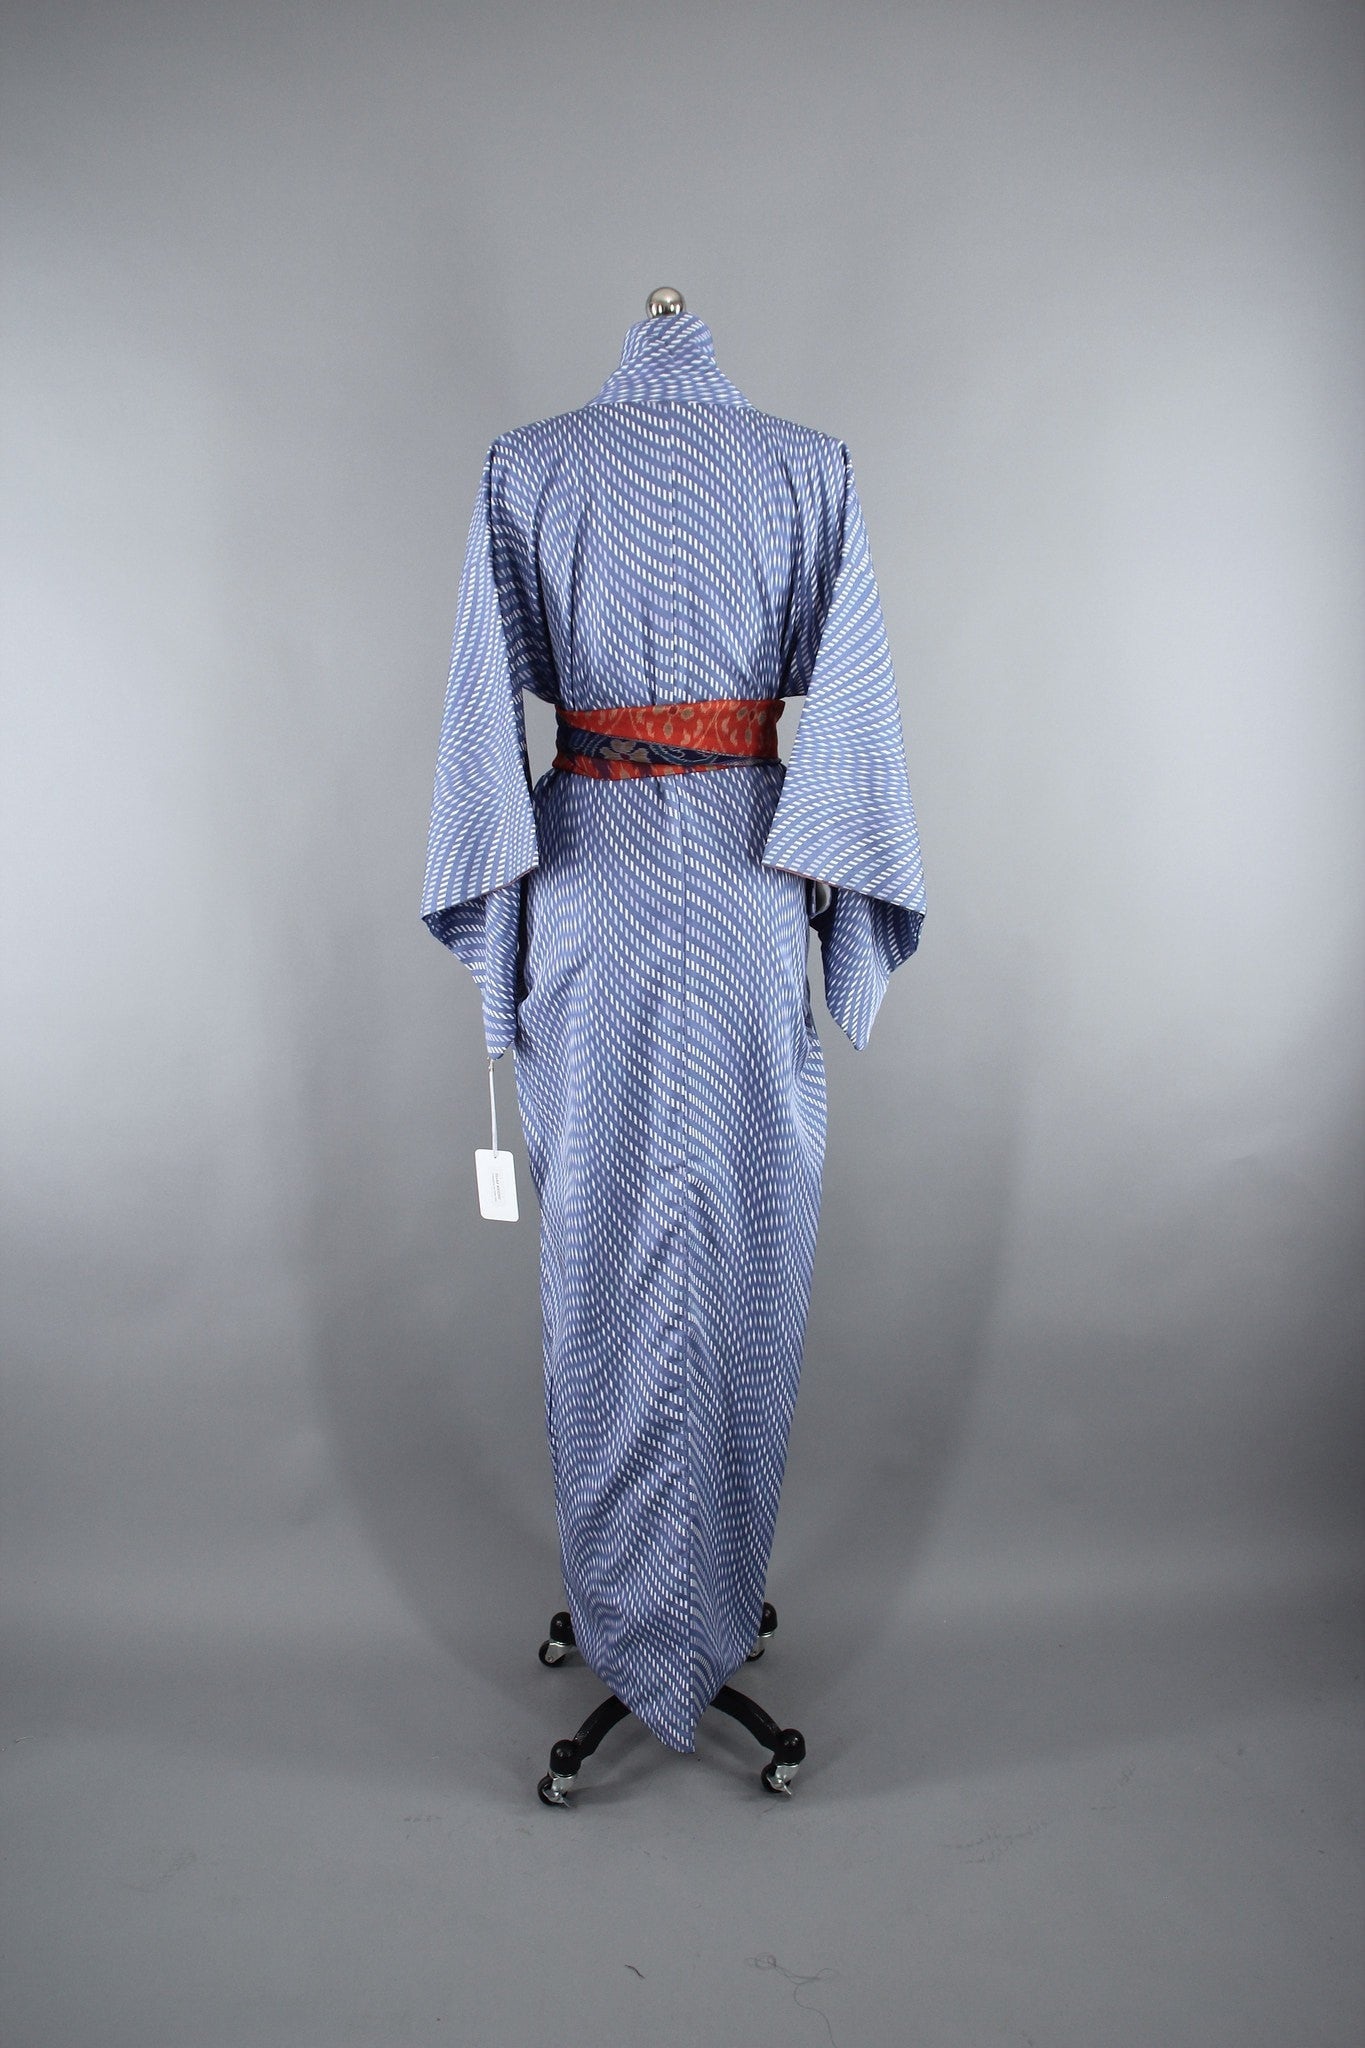 1950s Vintage Kimono Robe in Periwinkle Blue & White - ThisBlueBird